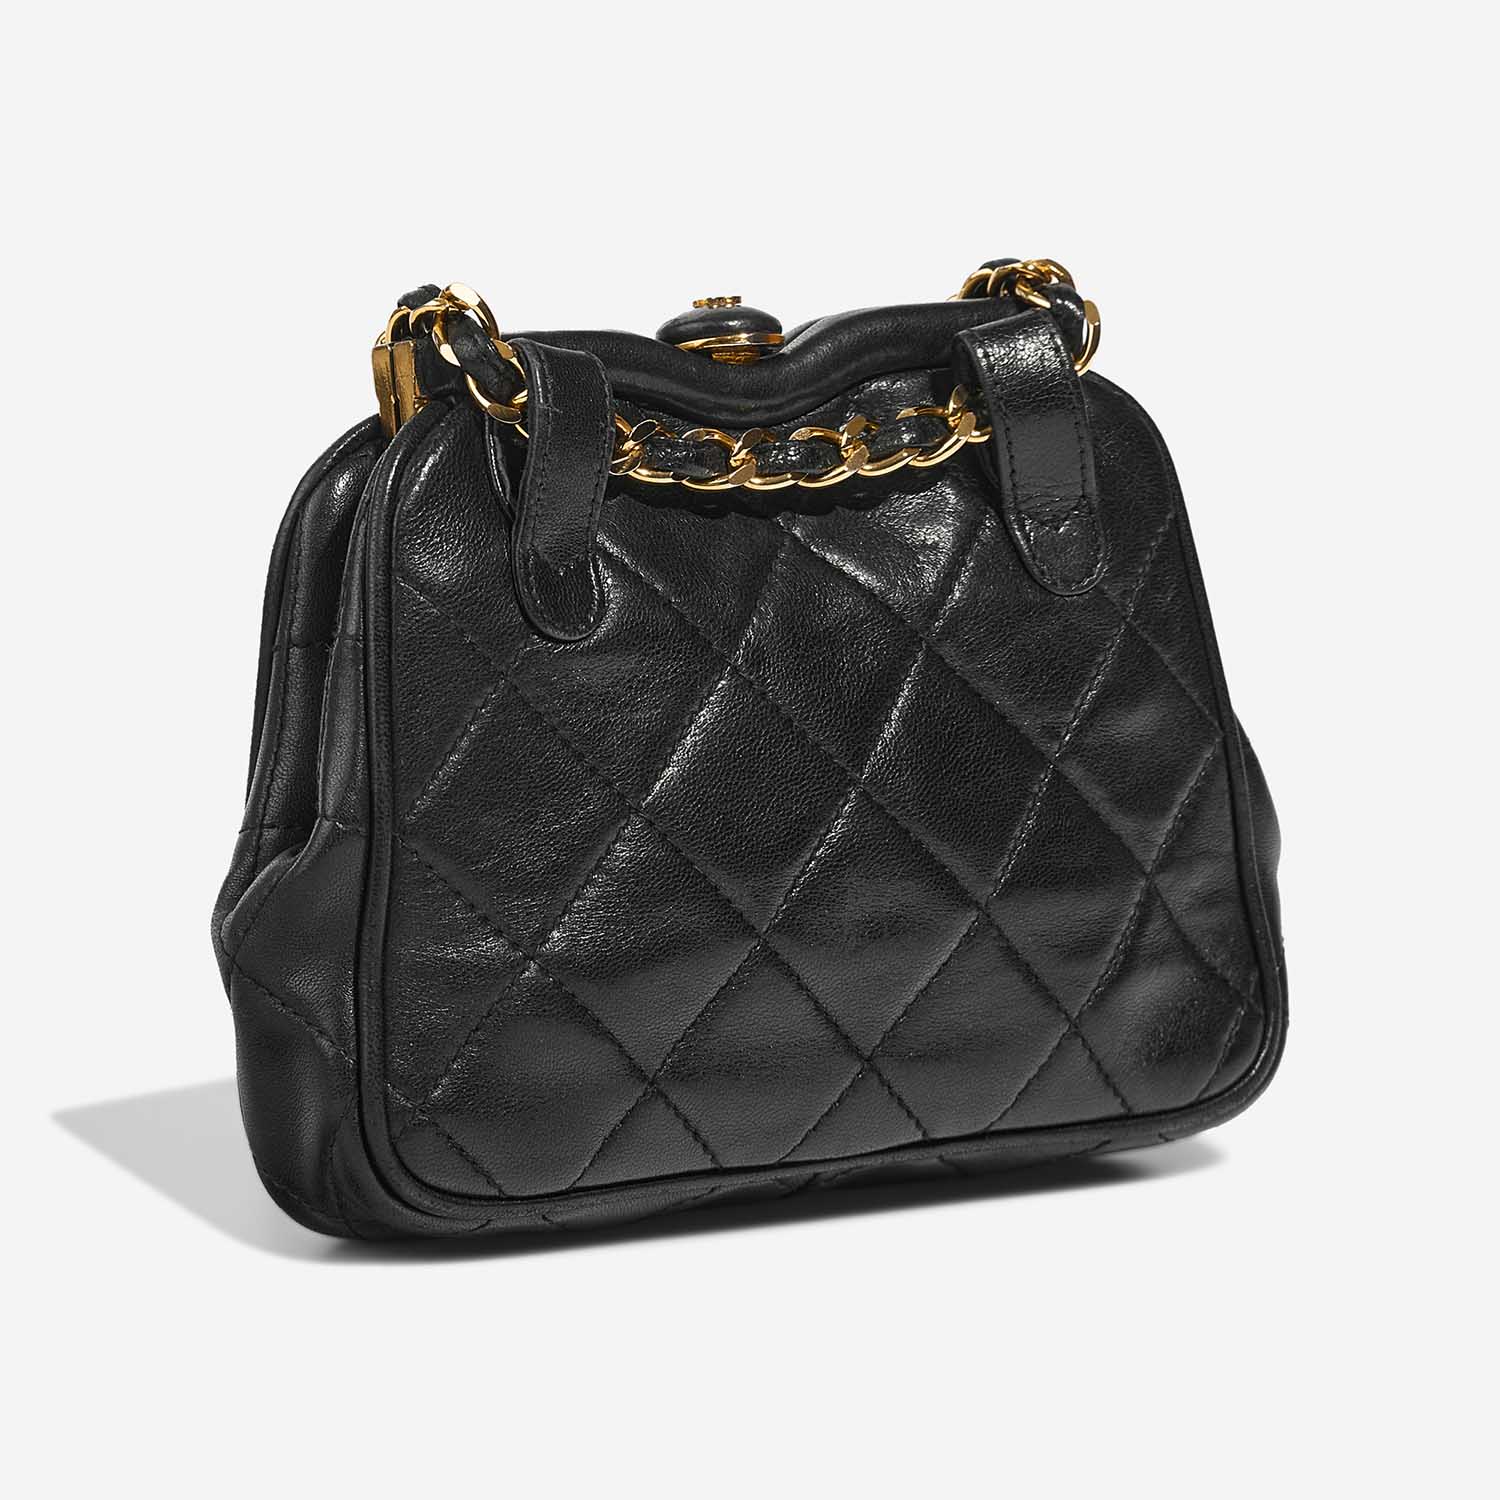 Chanel TimelessBeltBag OneSize Black Side Back | Verkaufen Sie Ihre Designer-Tasche auf Saclab.com